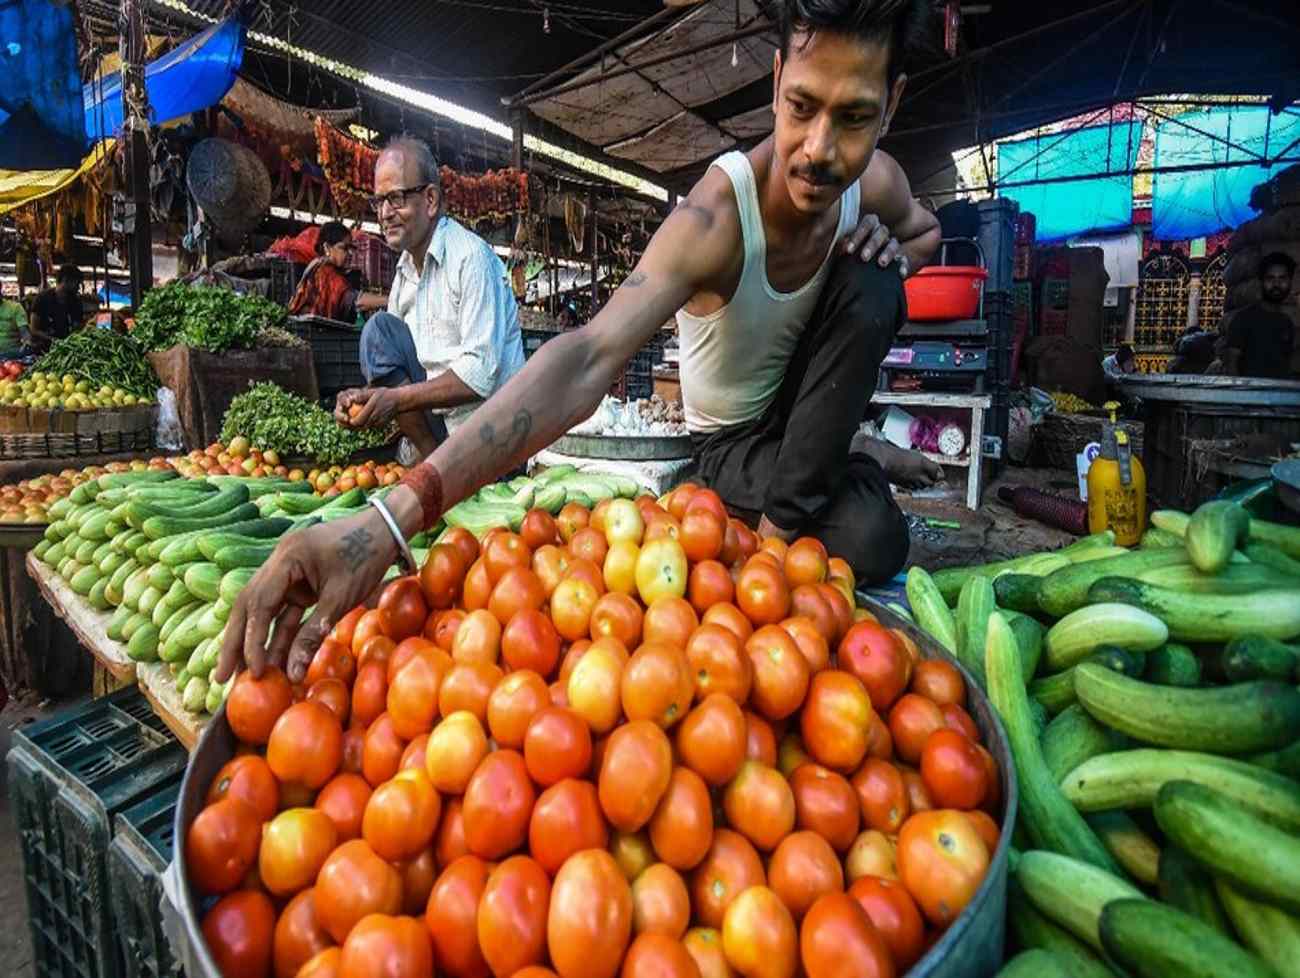 ભારતમા હવે ખાવાની વસ્તુ મોંઘી થઇ રહી છે, આઠ મહિનામાં ખાદ્ય ફુગાવાનો દર 8 ટકાથી ઉપર રહ્યો